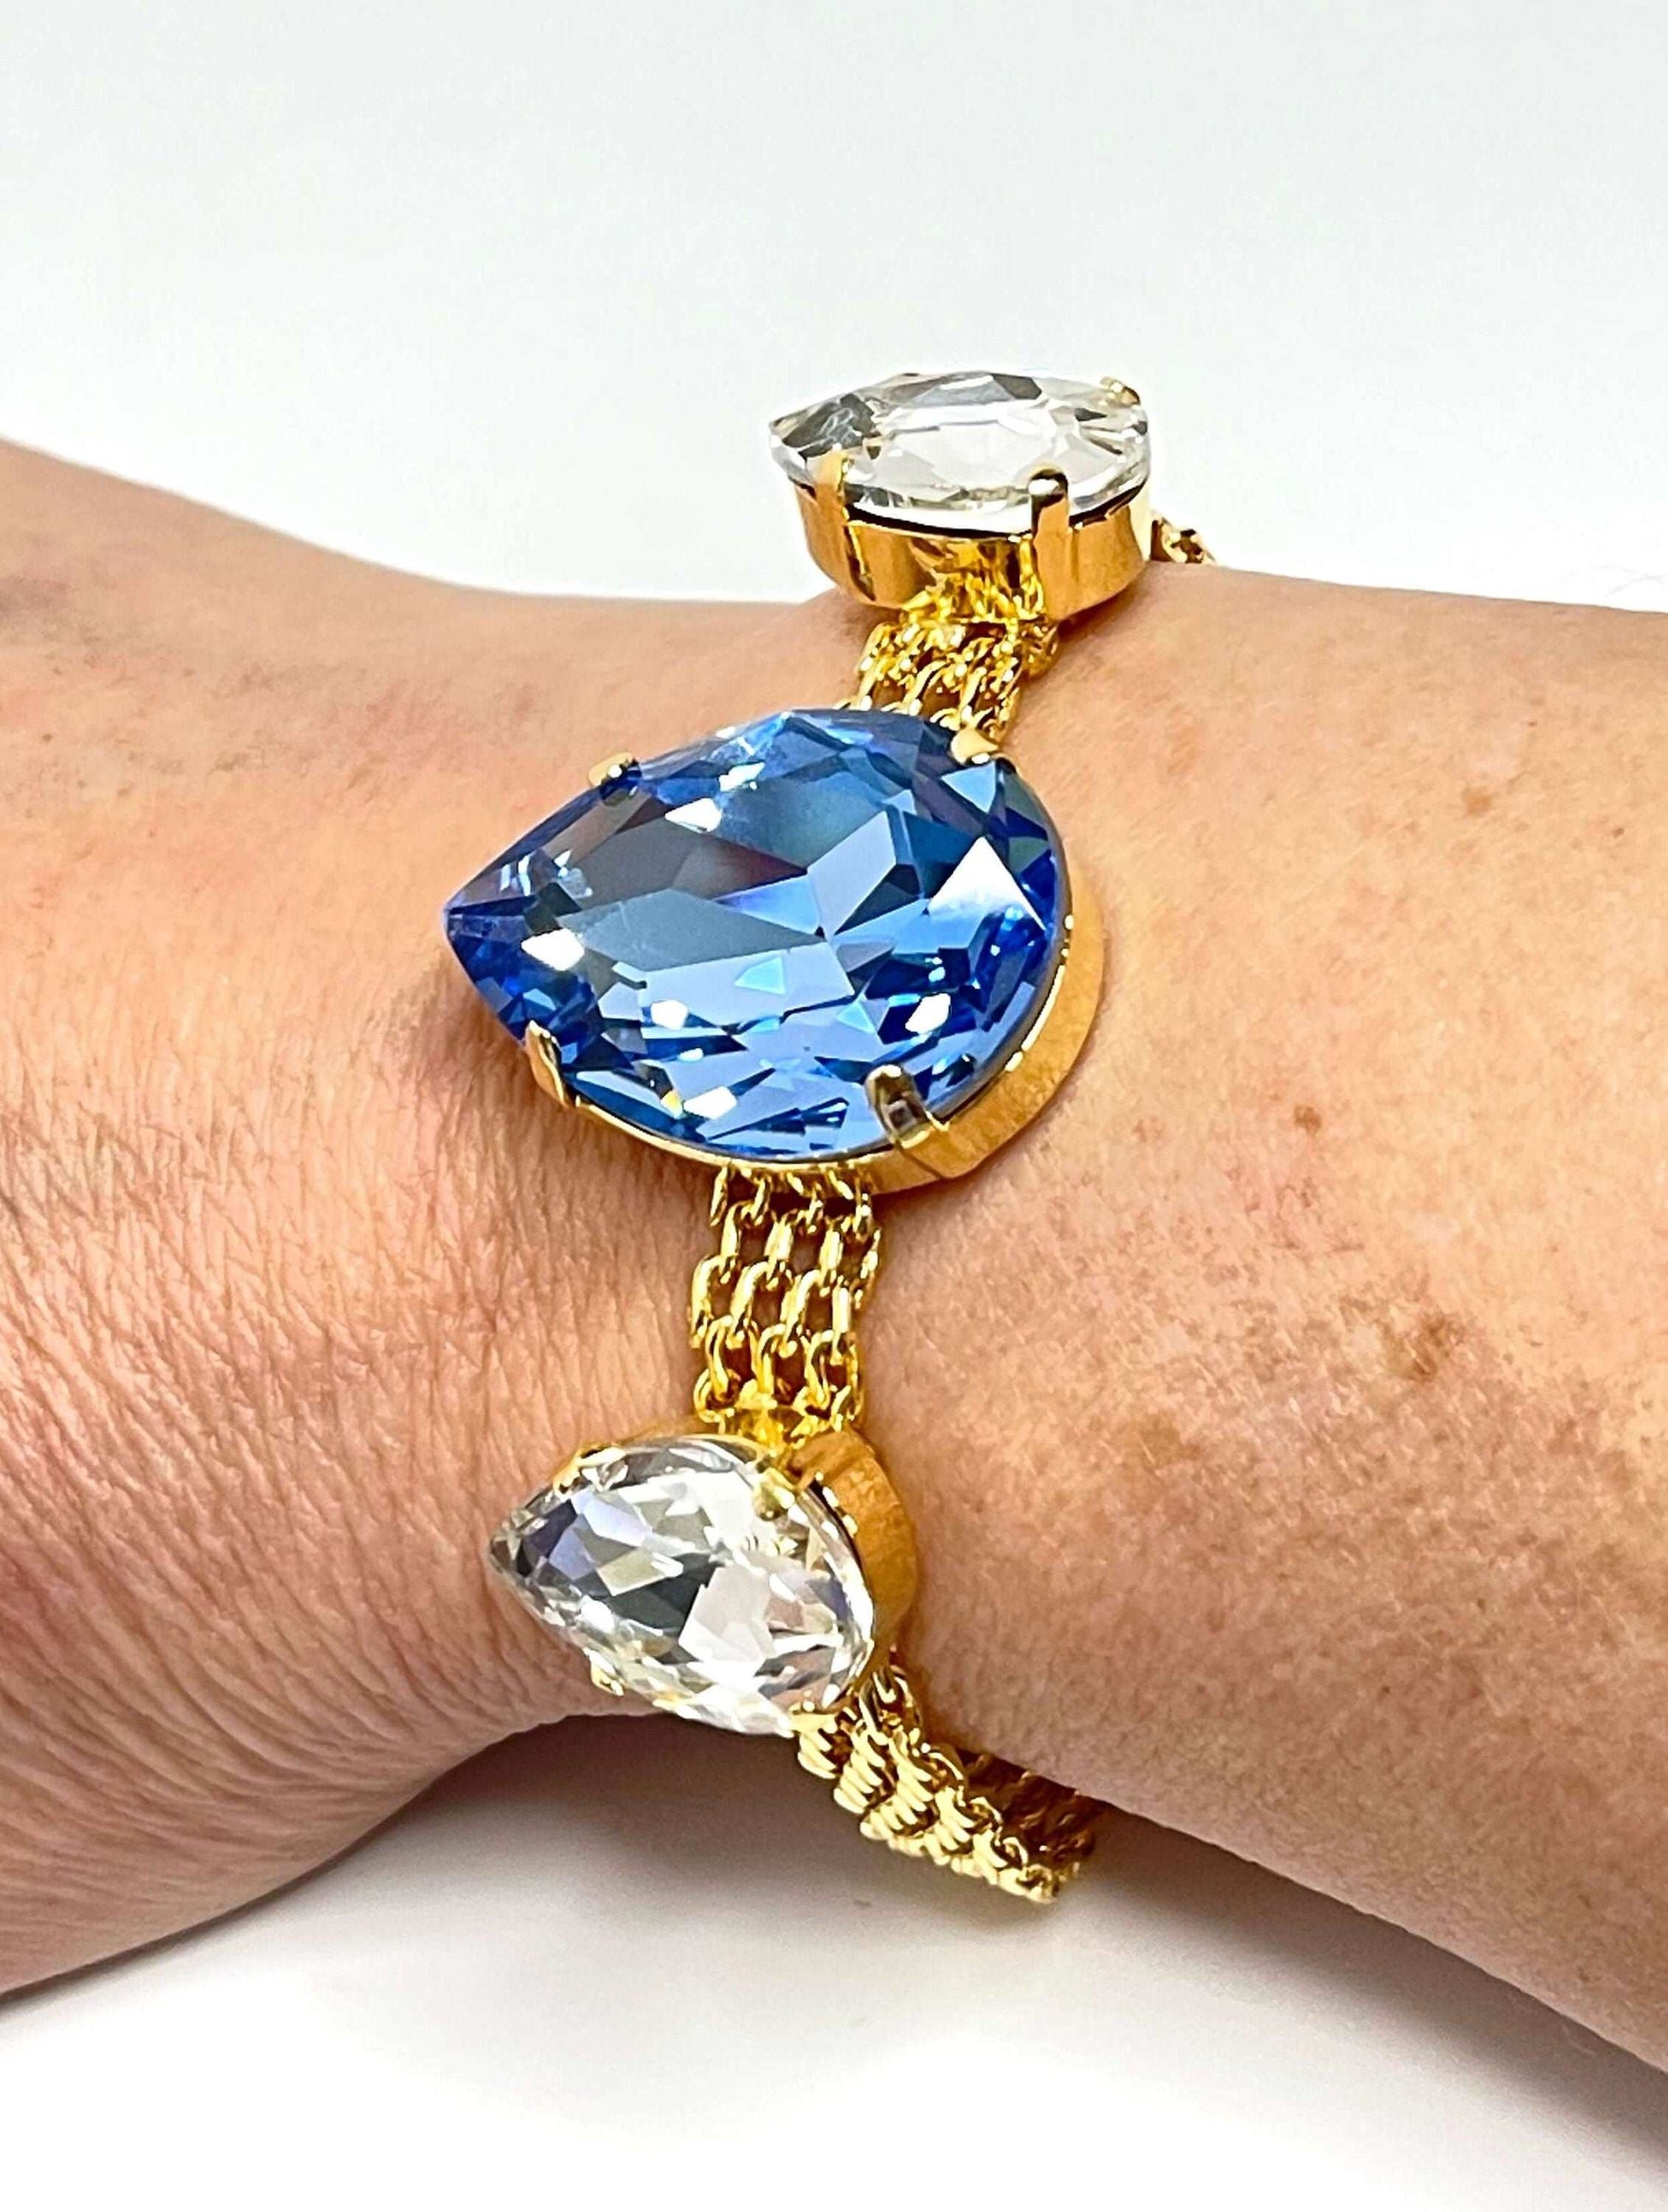 Light Sapphire Crystal Gold Mesh Bracelet, Large Teardrop Cuff, Statement Jewellery, Georgian Style Bracelet, Bracelets for Women